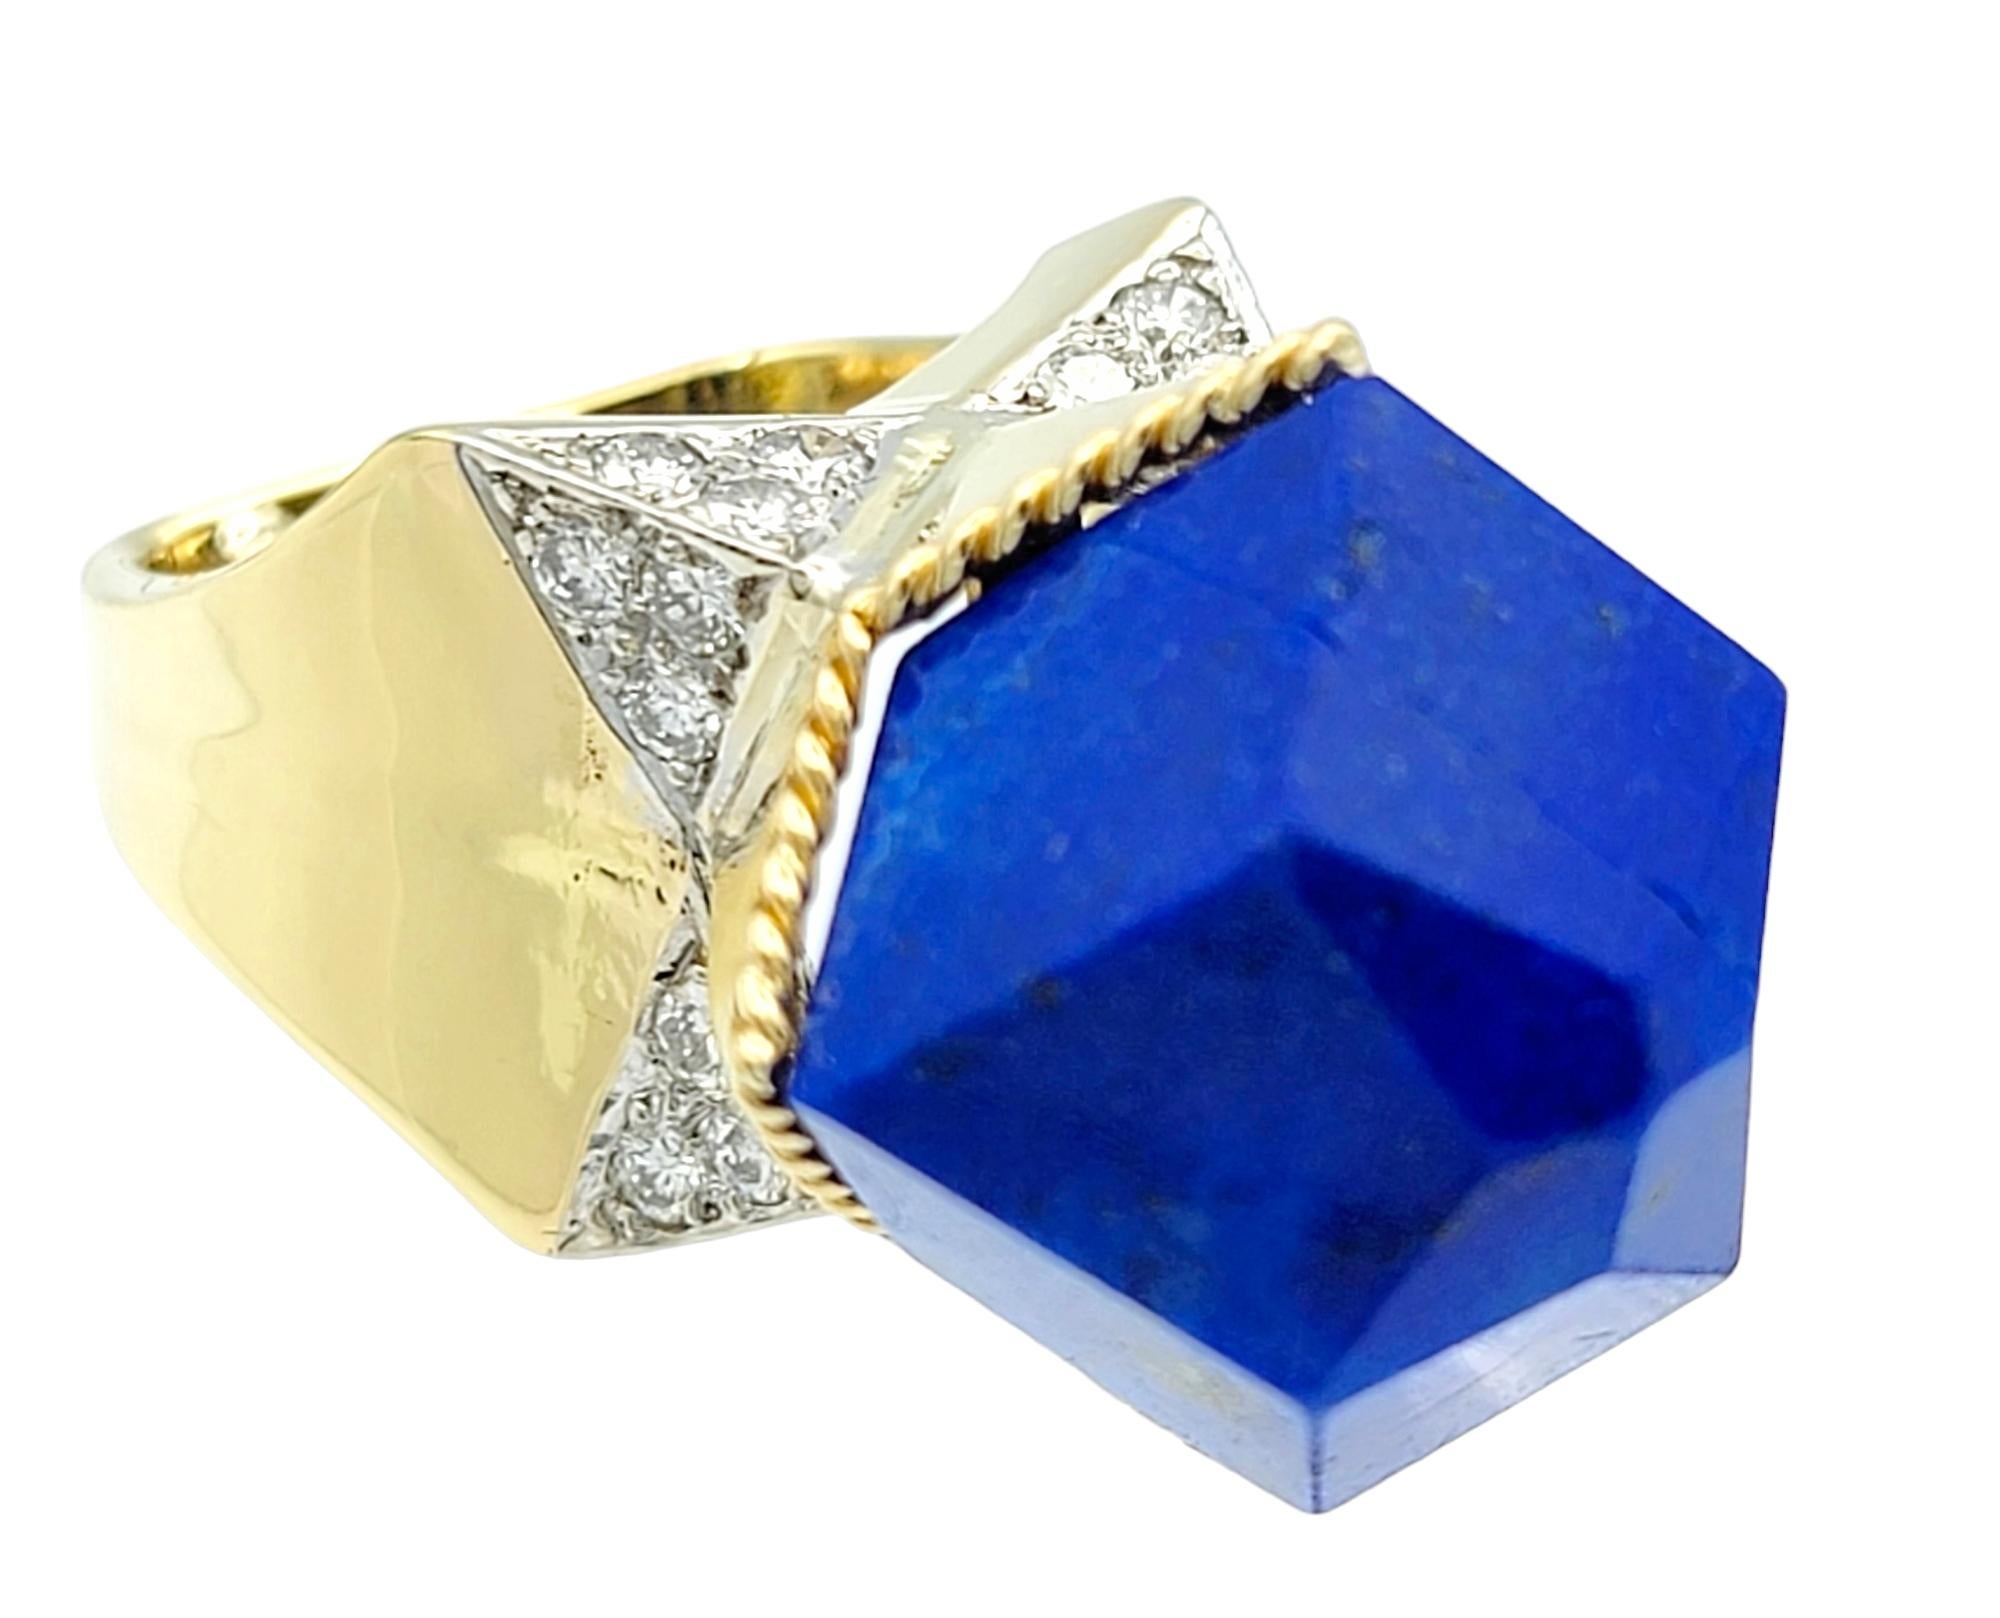 Ring passt bequem auf eine Größe 5,5, sondern hat Größe Perlen für die Anpassung.

Dieser unglaubliche Ring aus Lapislazuli und 18-karätigem Gelbgold ist ein fesselndes Schmuckstück, das zu jedem besonderen Anlass passt. Sein Herzstück ist ein